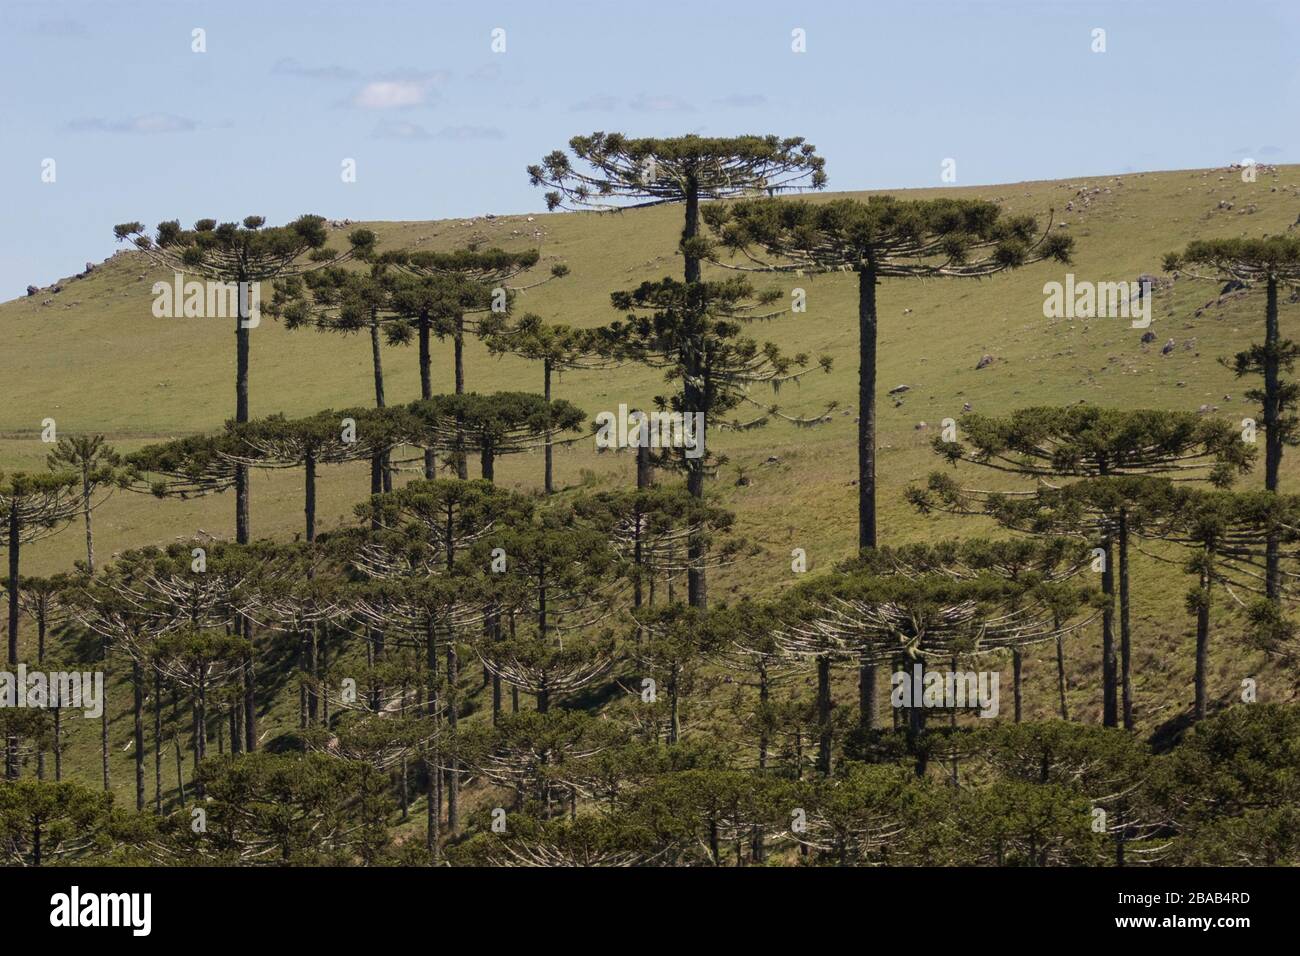 Forest of Araucaria, Pinheiro-pity-paraná (Araucaria angustifolia), São José dos Ausentes, Rio Grande do Sul, Brazil Stock Photo